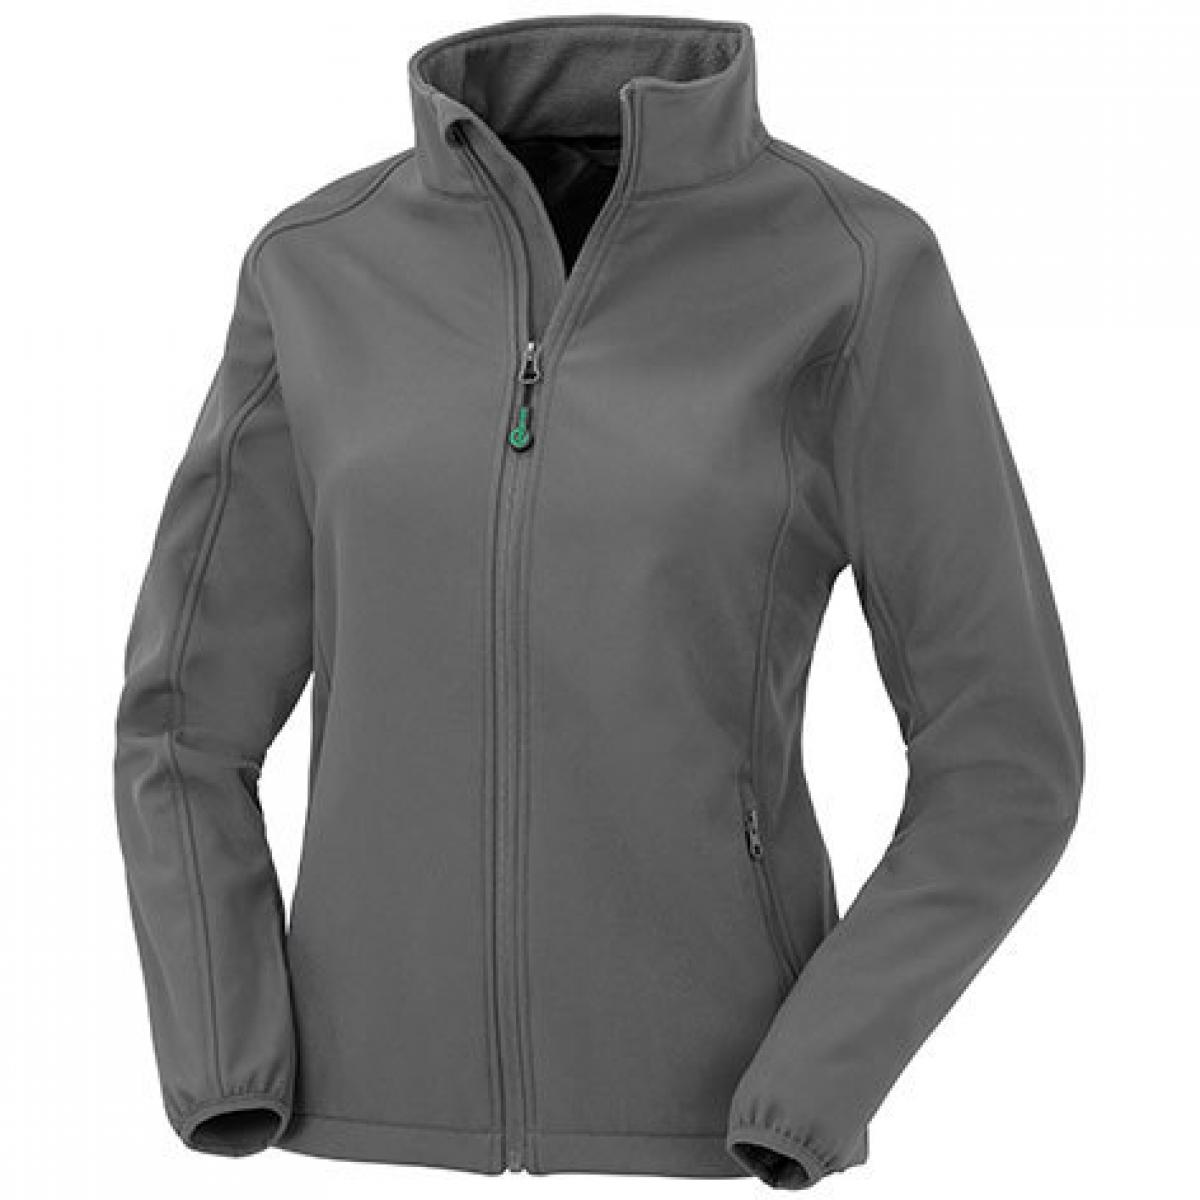 Hersteller: Result Genuine Recycled Herstellernummer: R901F Artikelbezeichnung: Womens Recycled 2-Layer Printable Softshell Jacket Farbe: Workguard Grey